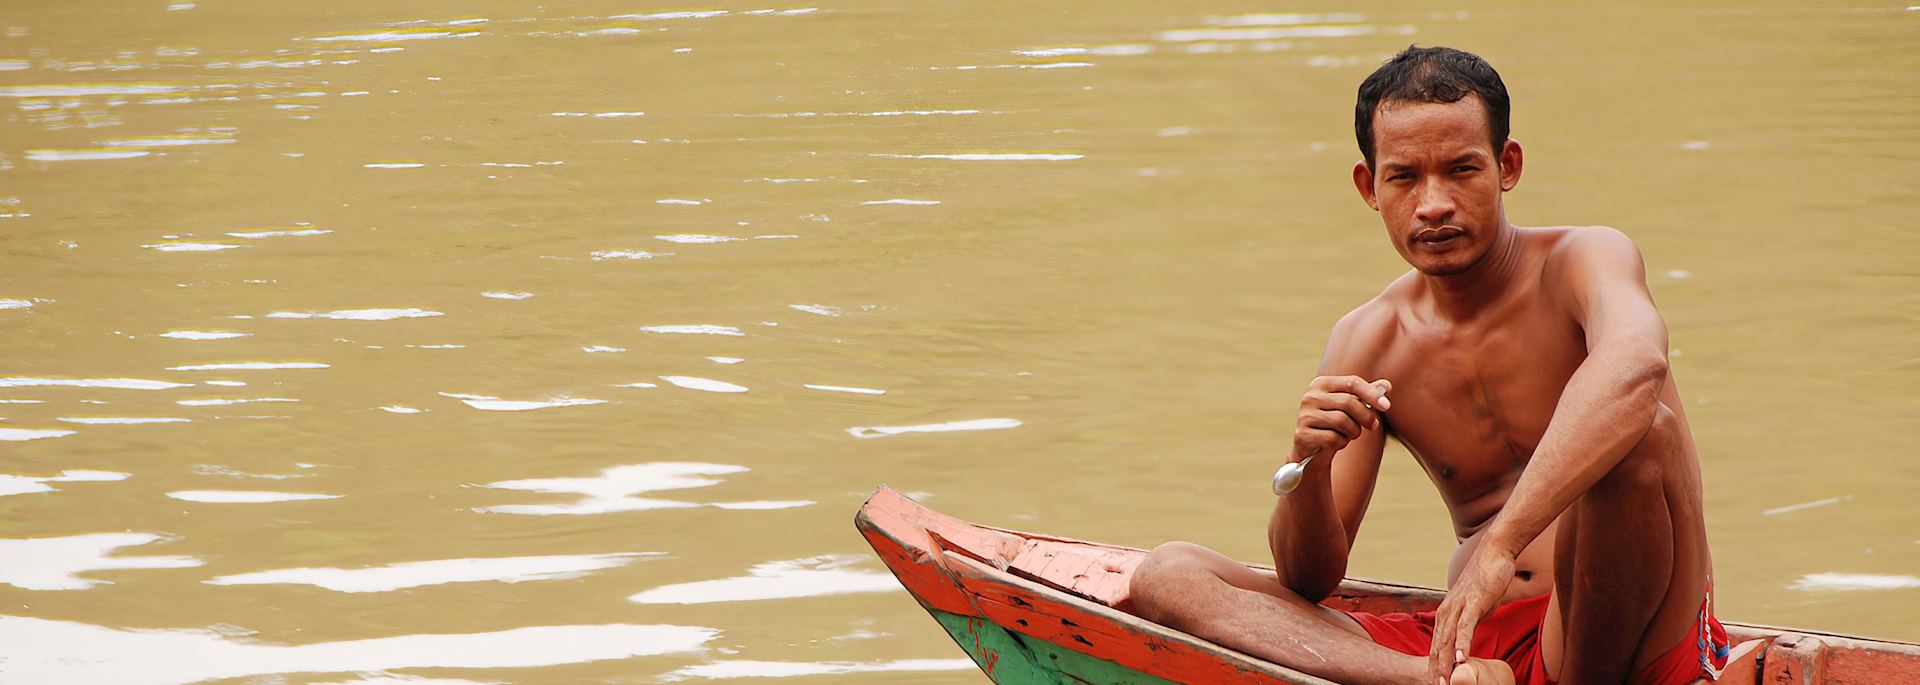 Boatman in Koh Kong